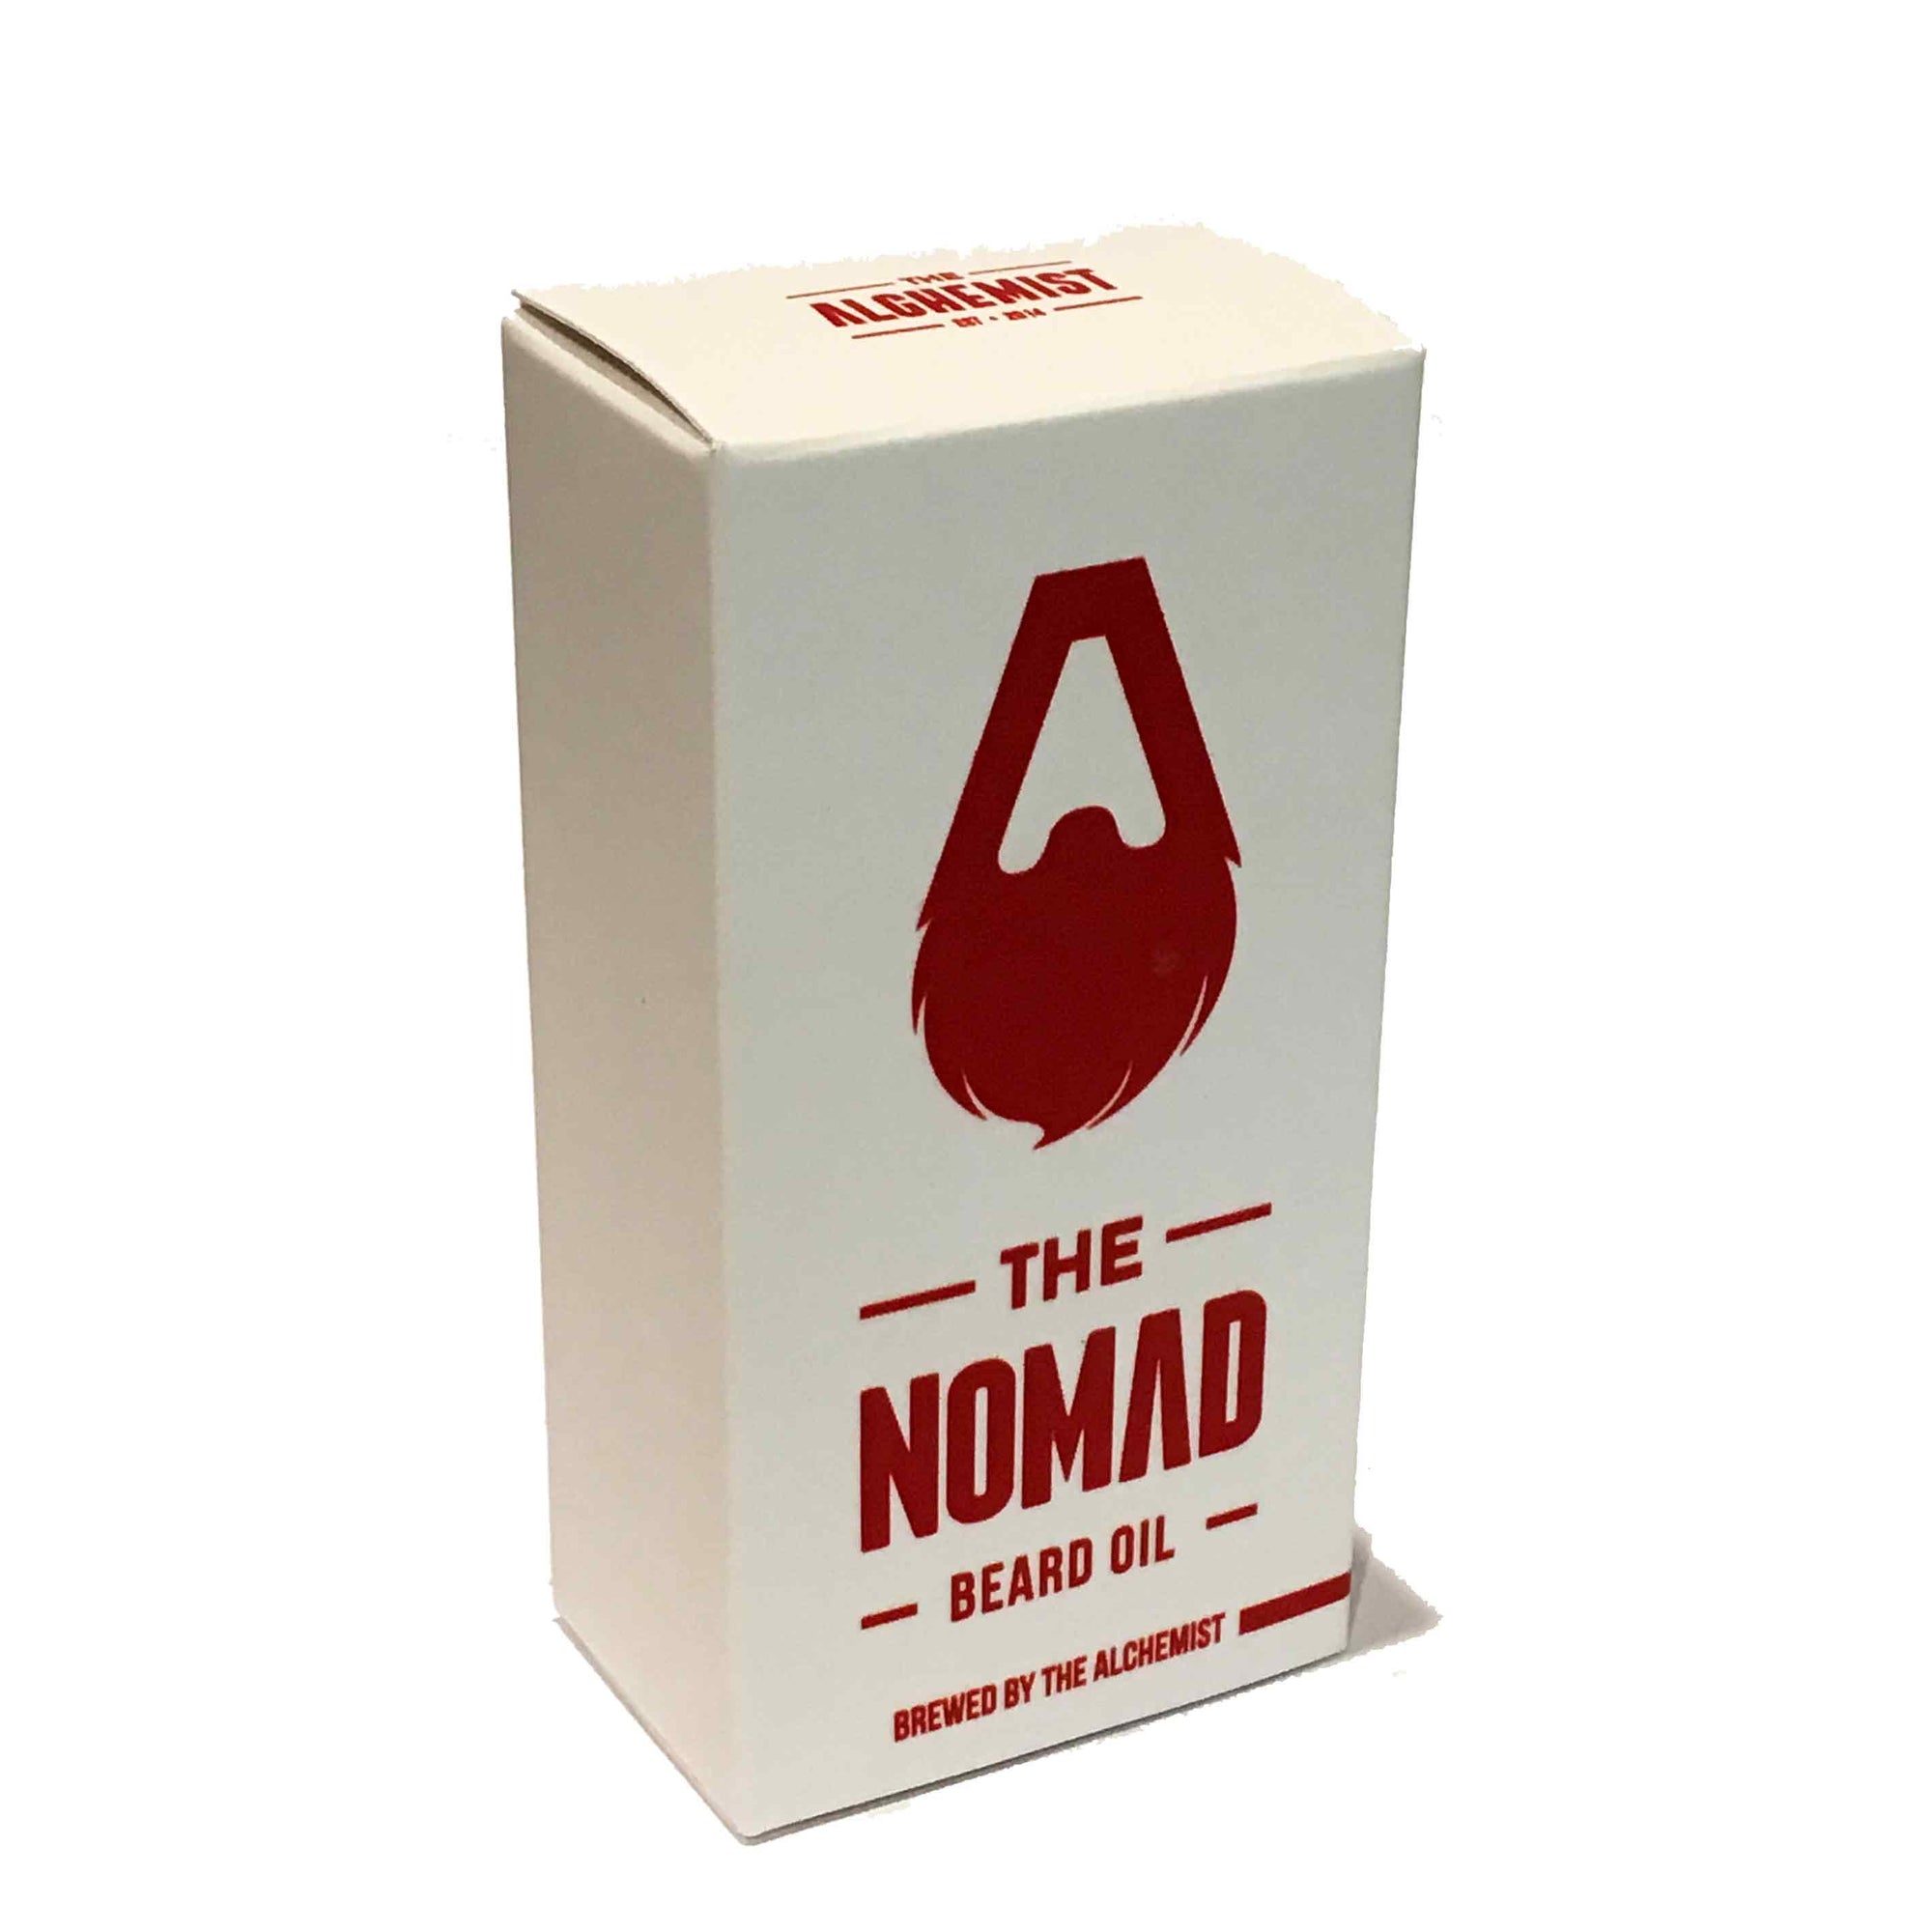 The nomad beard oil by the alchemist_Beardgrooming kit nz-Beard care-gifts for men-gift ideas for men-giftsformennz